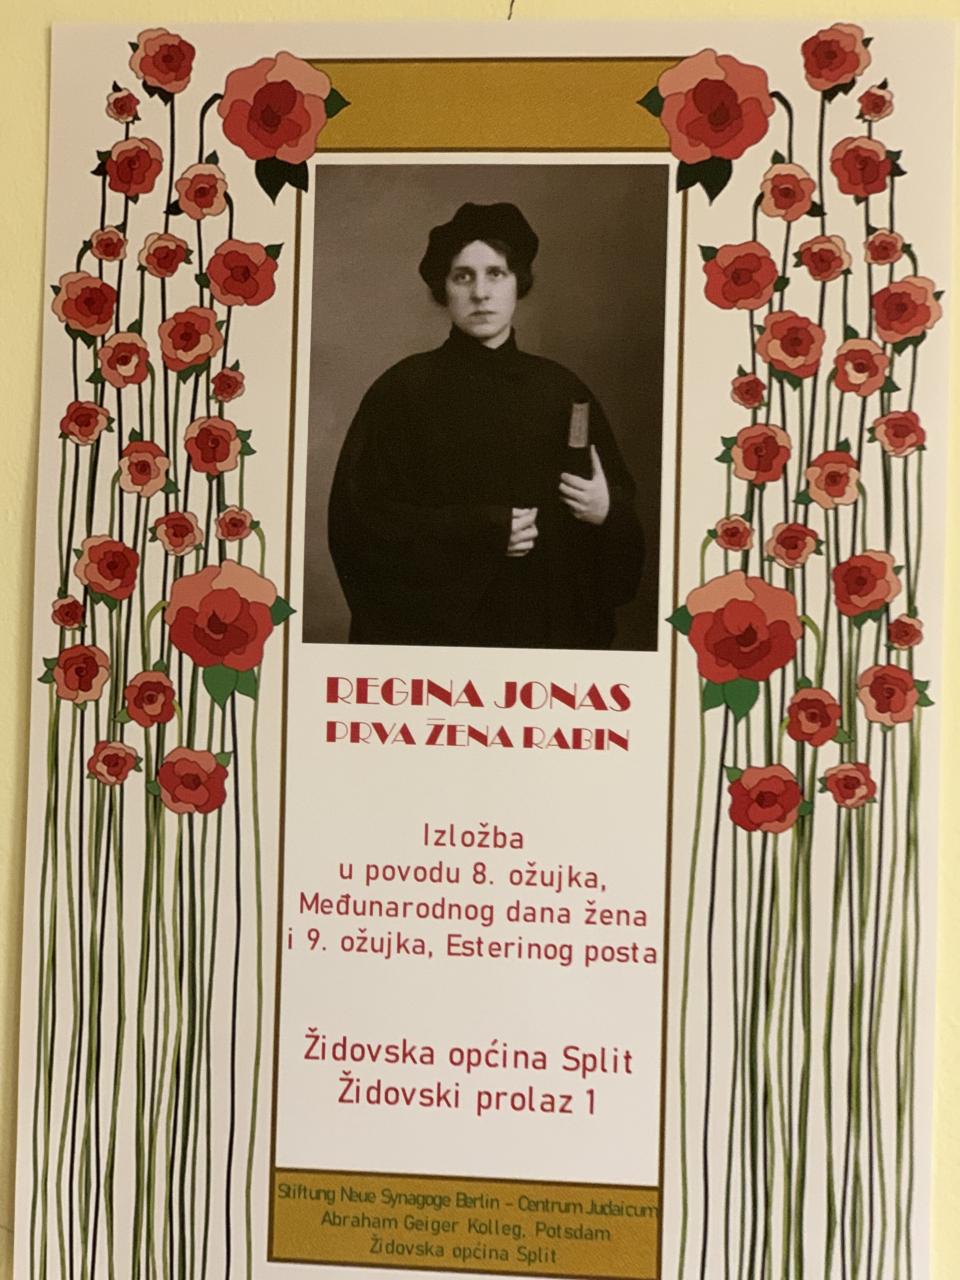 U splitskoj Židovskoj općini otvorena izložba Regina Jonas, prva žena rabin